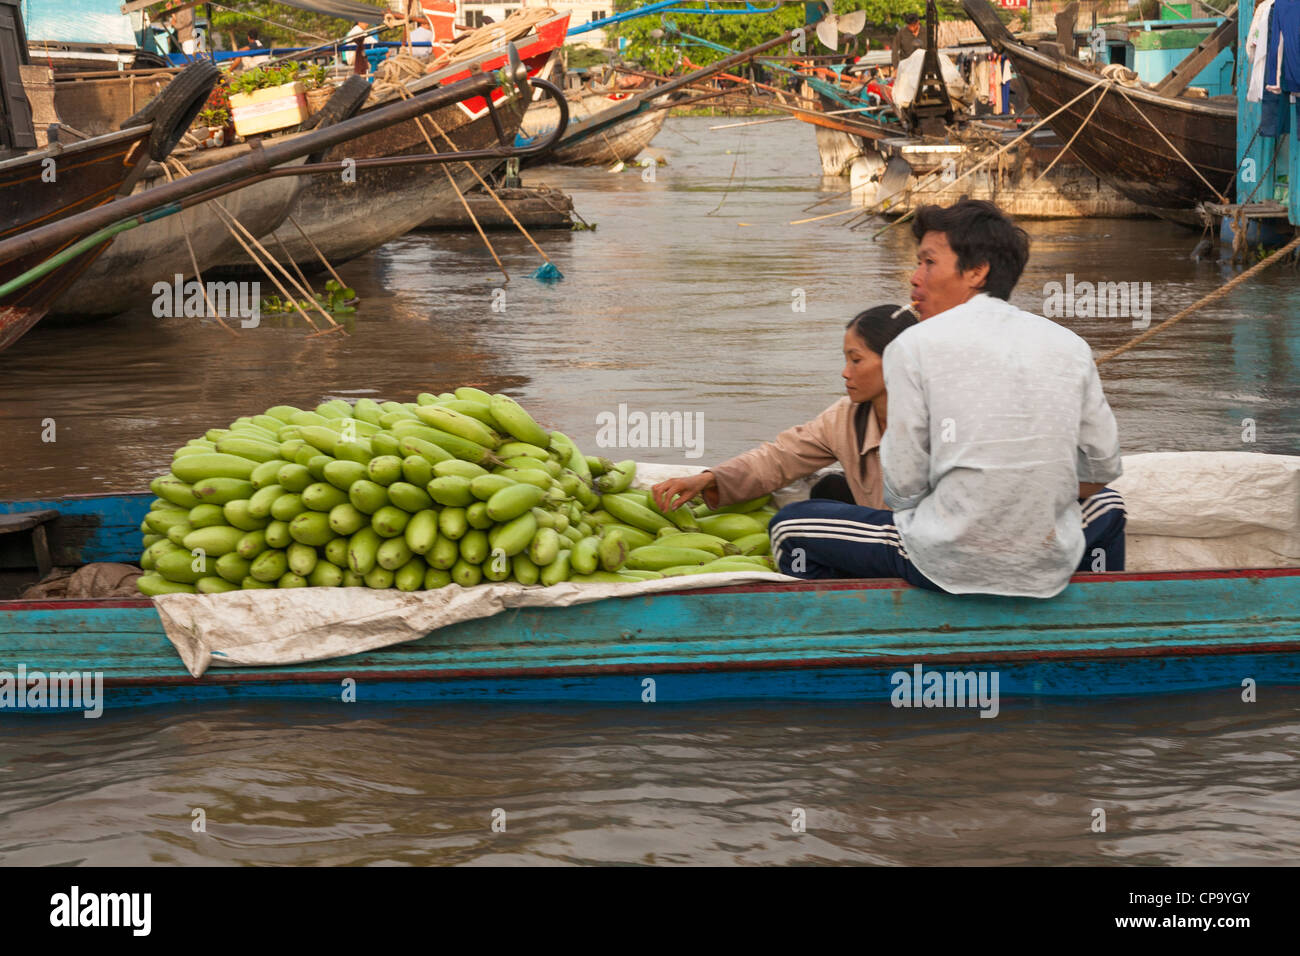 La gente in una barca nel mercato galleggiante, Cai Rang vicino a Can Tho, Fiume Mekong Delta, Vietnam Foto Stock